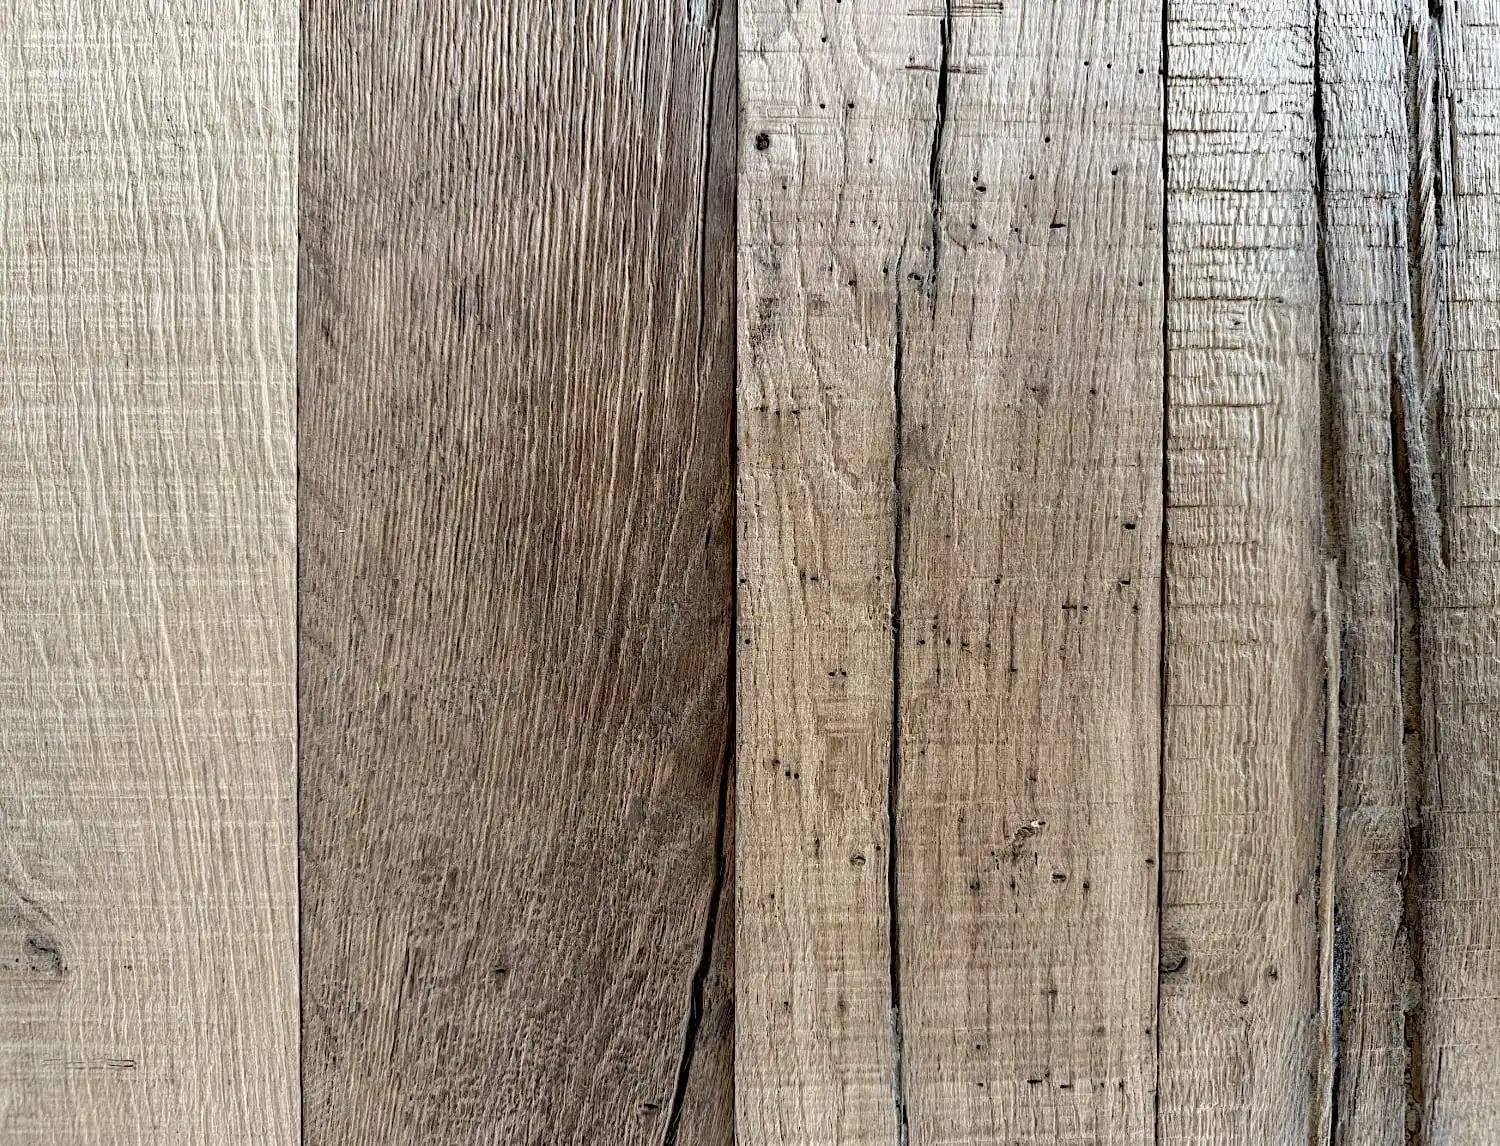 Gros plan d'une surface en bois montrant six planches verticales de bois patiné de différentes nuances avec des motifs et des textures de grain visibles, rappelant le parquet ancien.